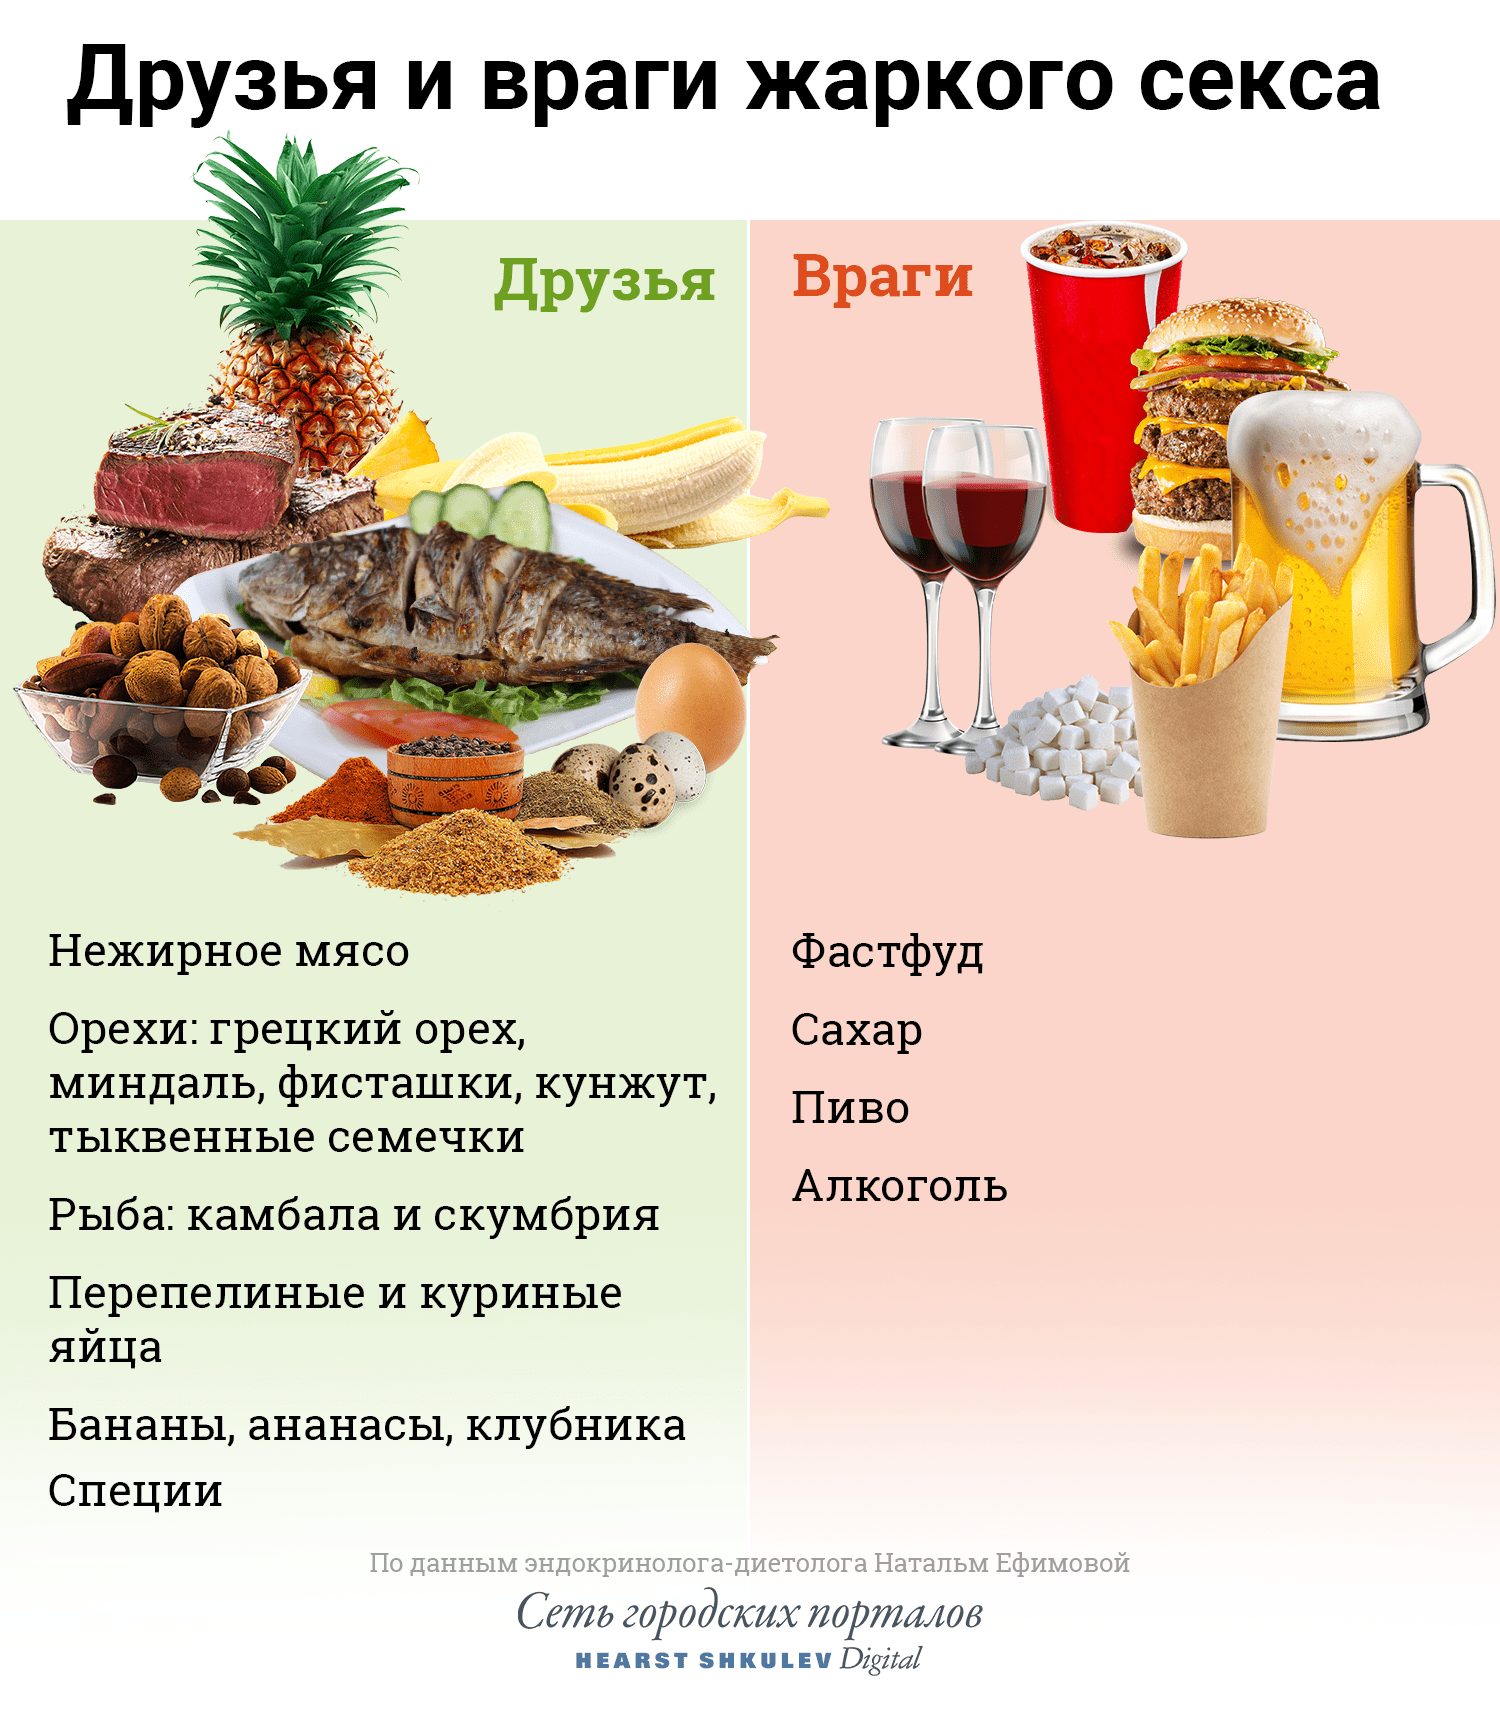 Ответы afisha-piknik.ru: Любовь-лучшая диета, а лучший фитнес-это секс, согласны?